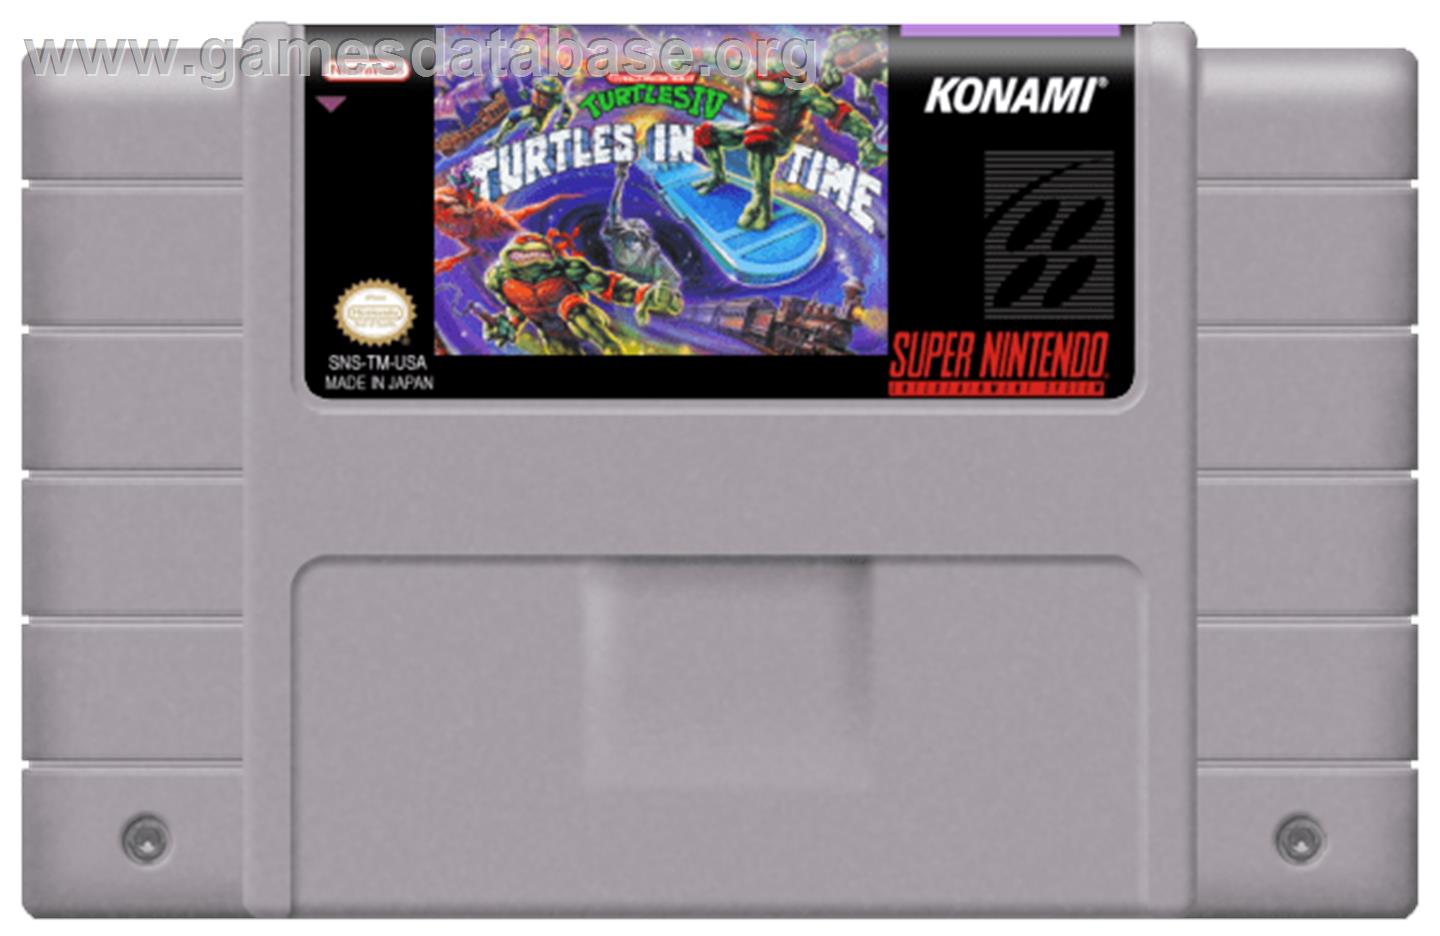 Teenage Mutant Ninja Turtles IV: Turtles in Time - Nintendo SNES - Artwork - Cartridge